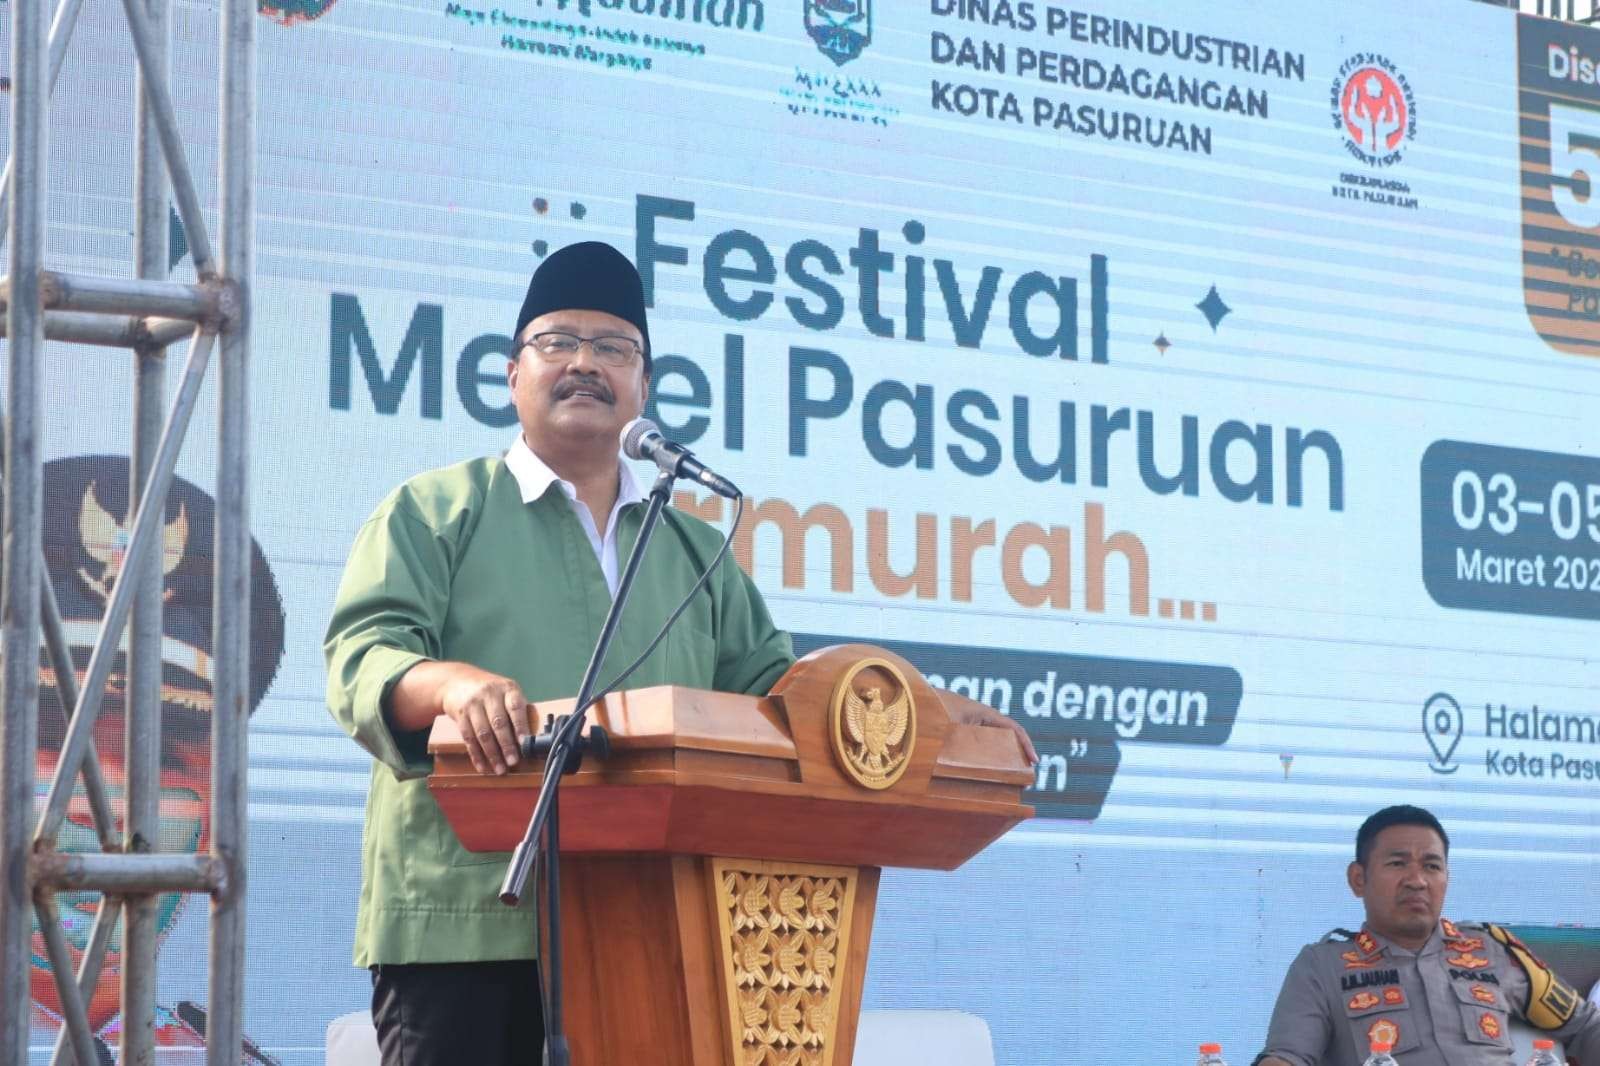 Walikota Pasuruan Saifullah Yusuf (Gus Ipul) secara resmi membuka festival bertema "kualitas terdepan dengan harga jor-joran". (Foto: Pemkot Pasuruan)